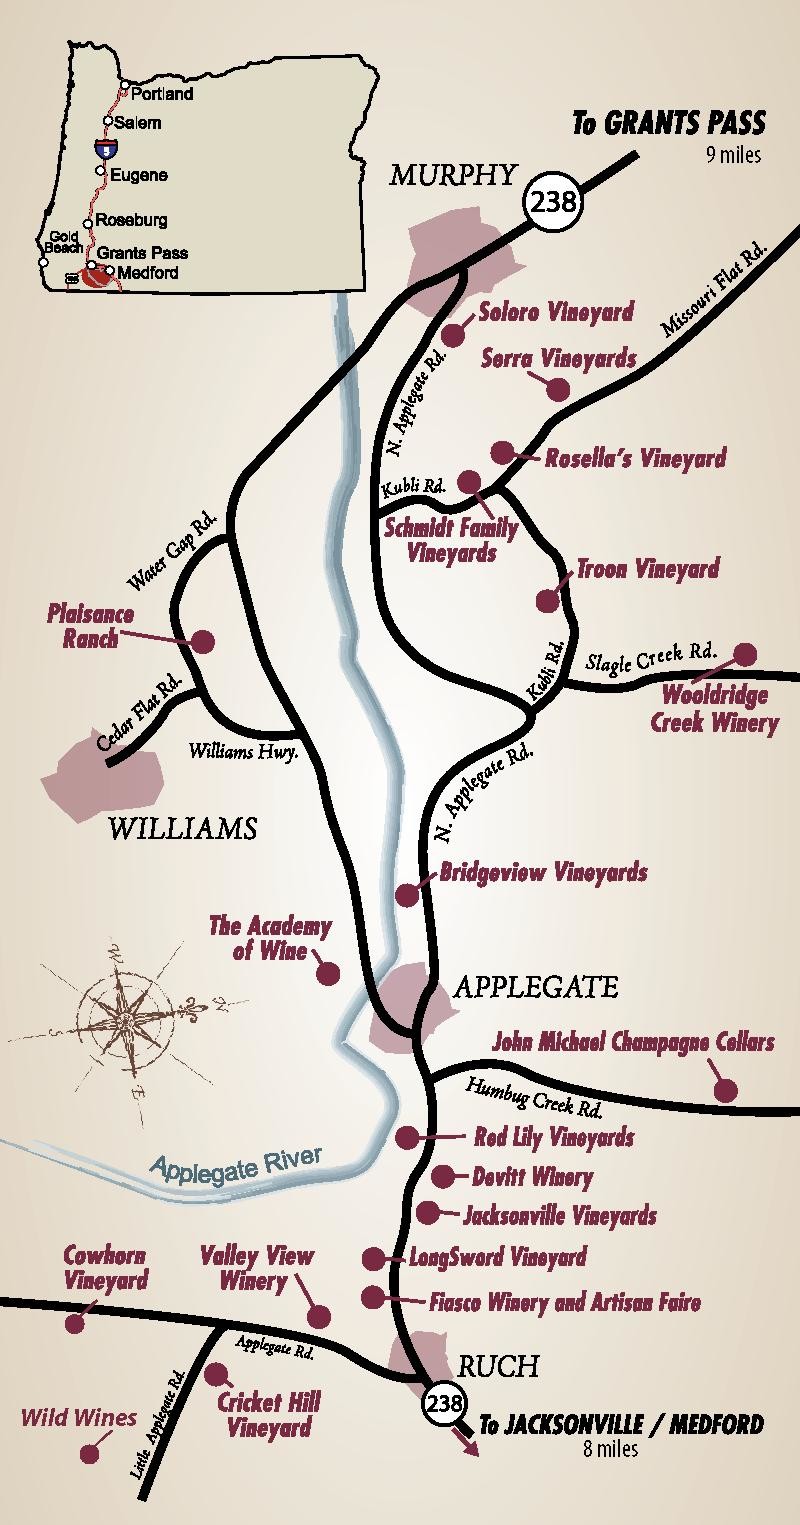 uncorked wine tour applegate valley